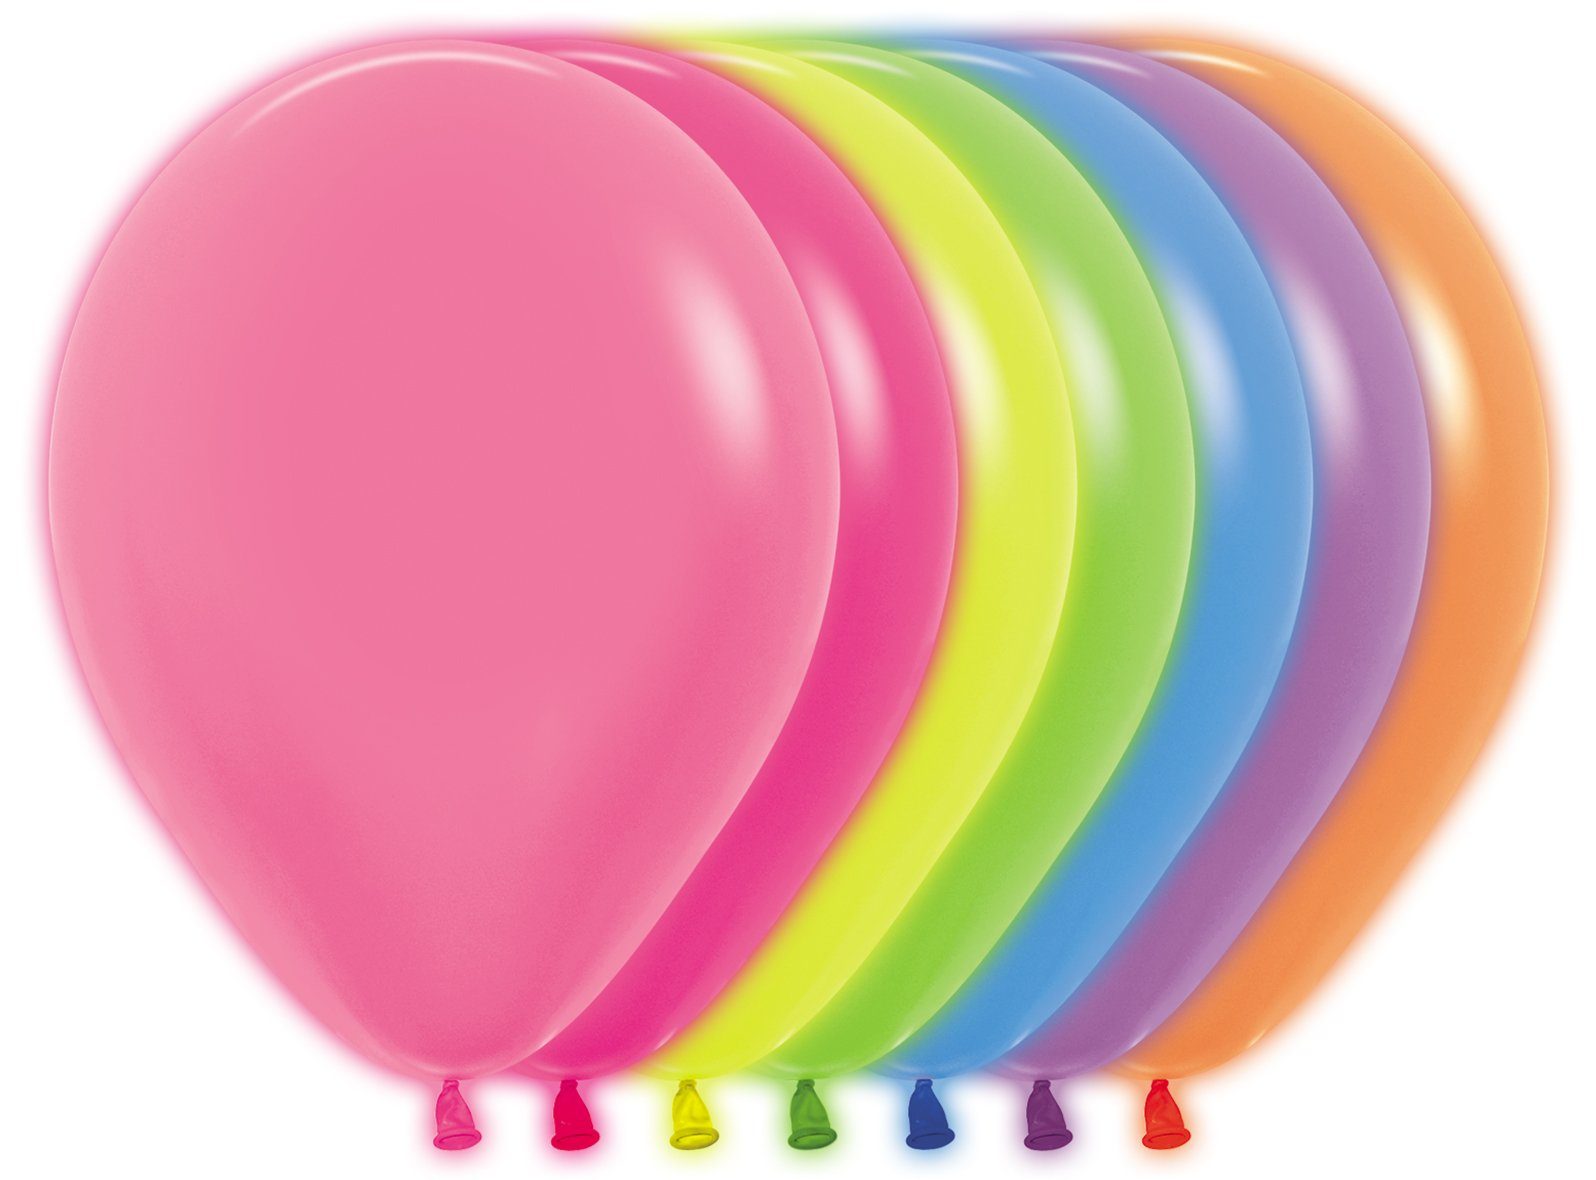 Sempertex Luftballon 50 Neon Ballons Sempertex 30 cm Neonfarben, Glow in the Dark Balloons, Neon-Farben leuchten bei Schwarzlicht